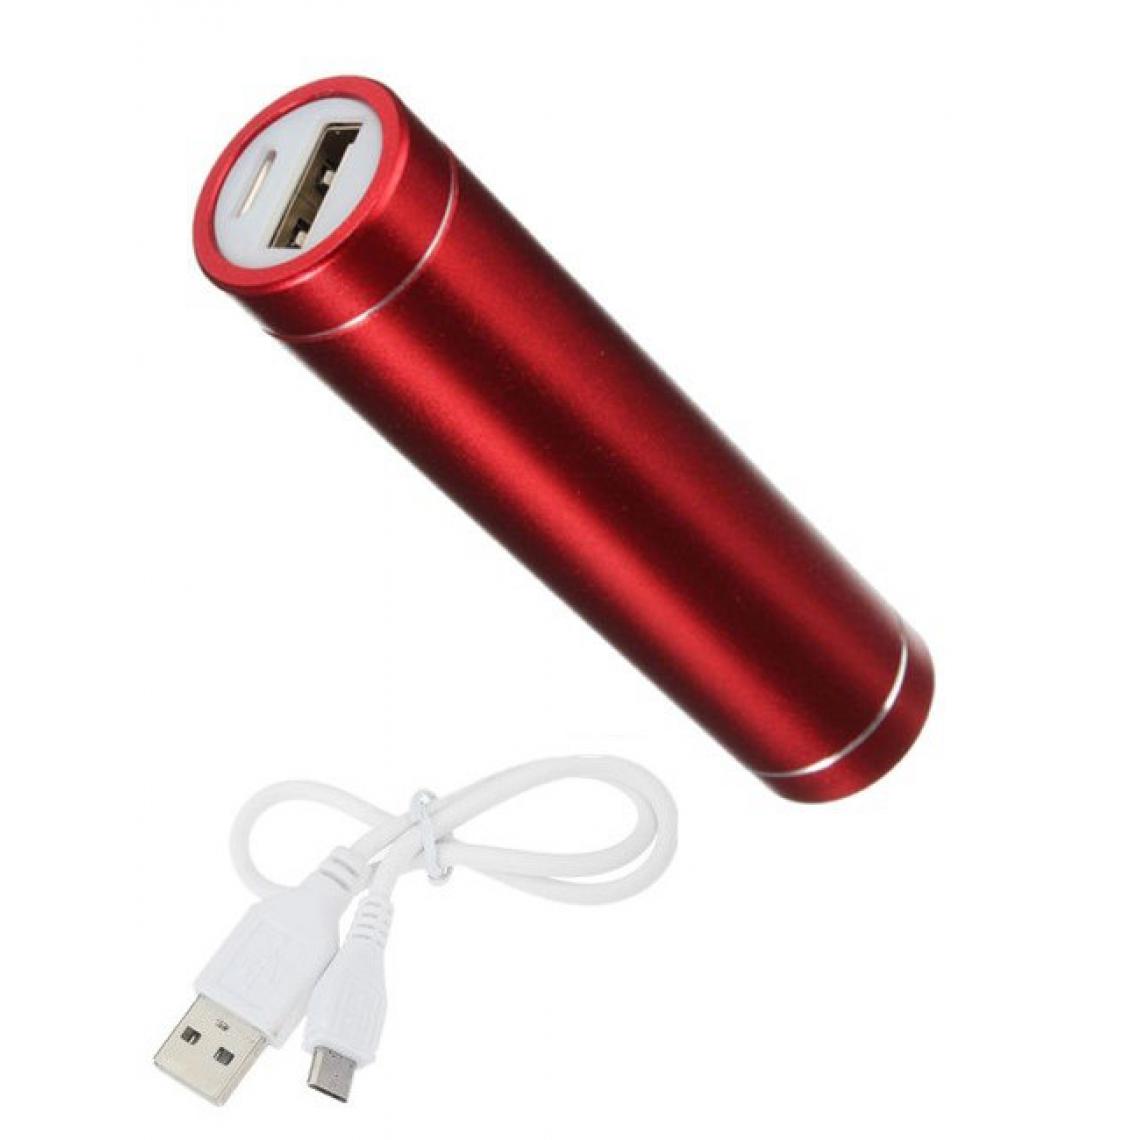 Shot - Batterie Chargeur Externe pour XIAOMI Redmi S2 Power Bank 2600mAh avec Cable USB/Mirco USB Secours Telephon (ROUGE) - Chargeur secteur téléphone